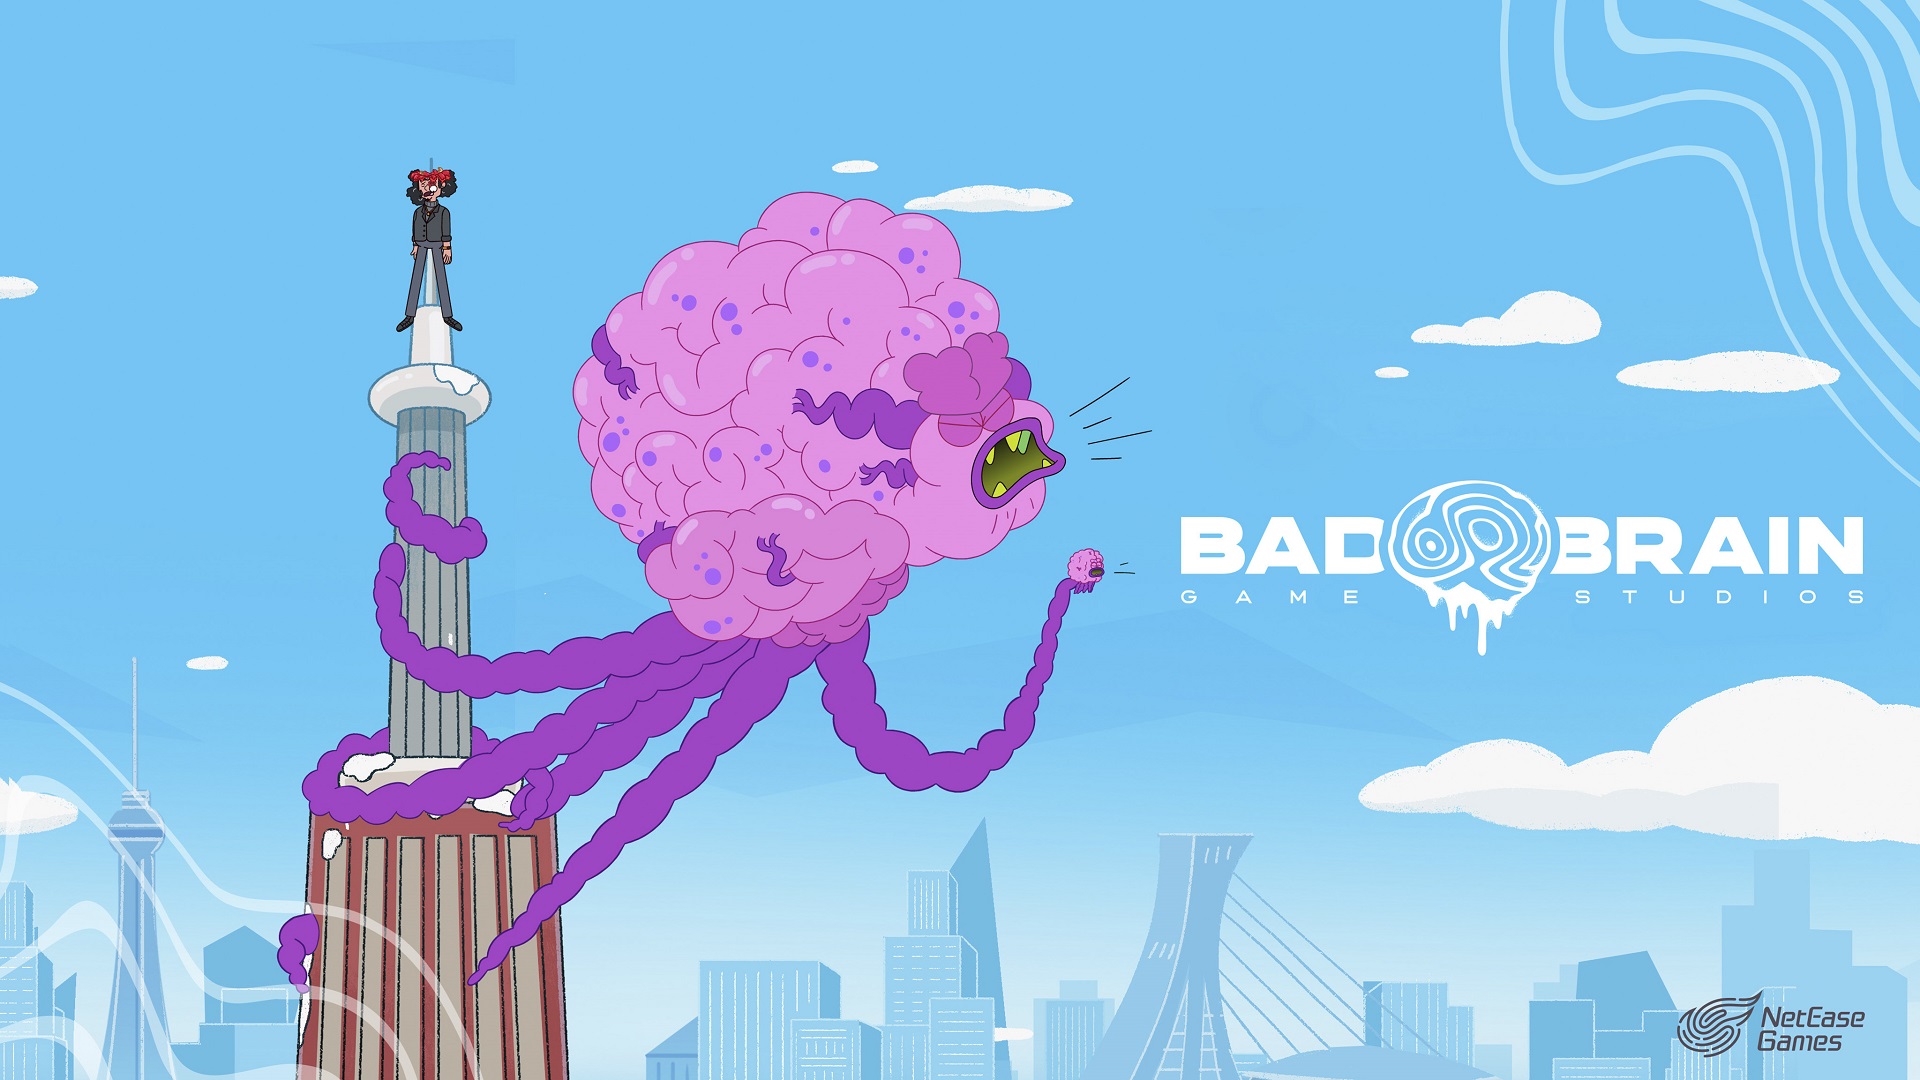 Bad Brain Game Studios